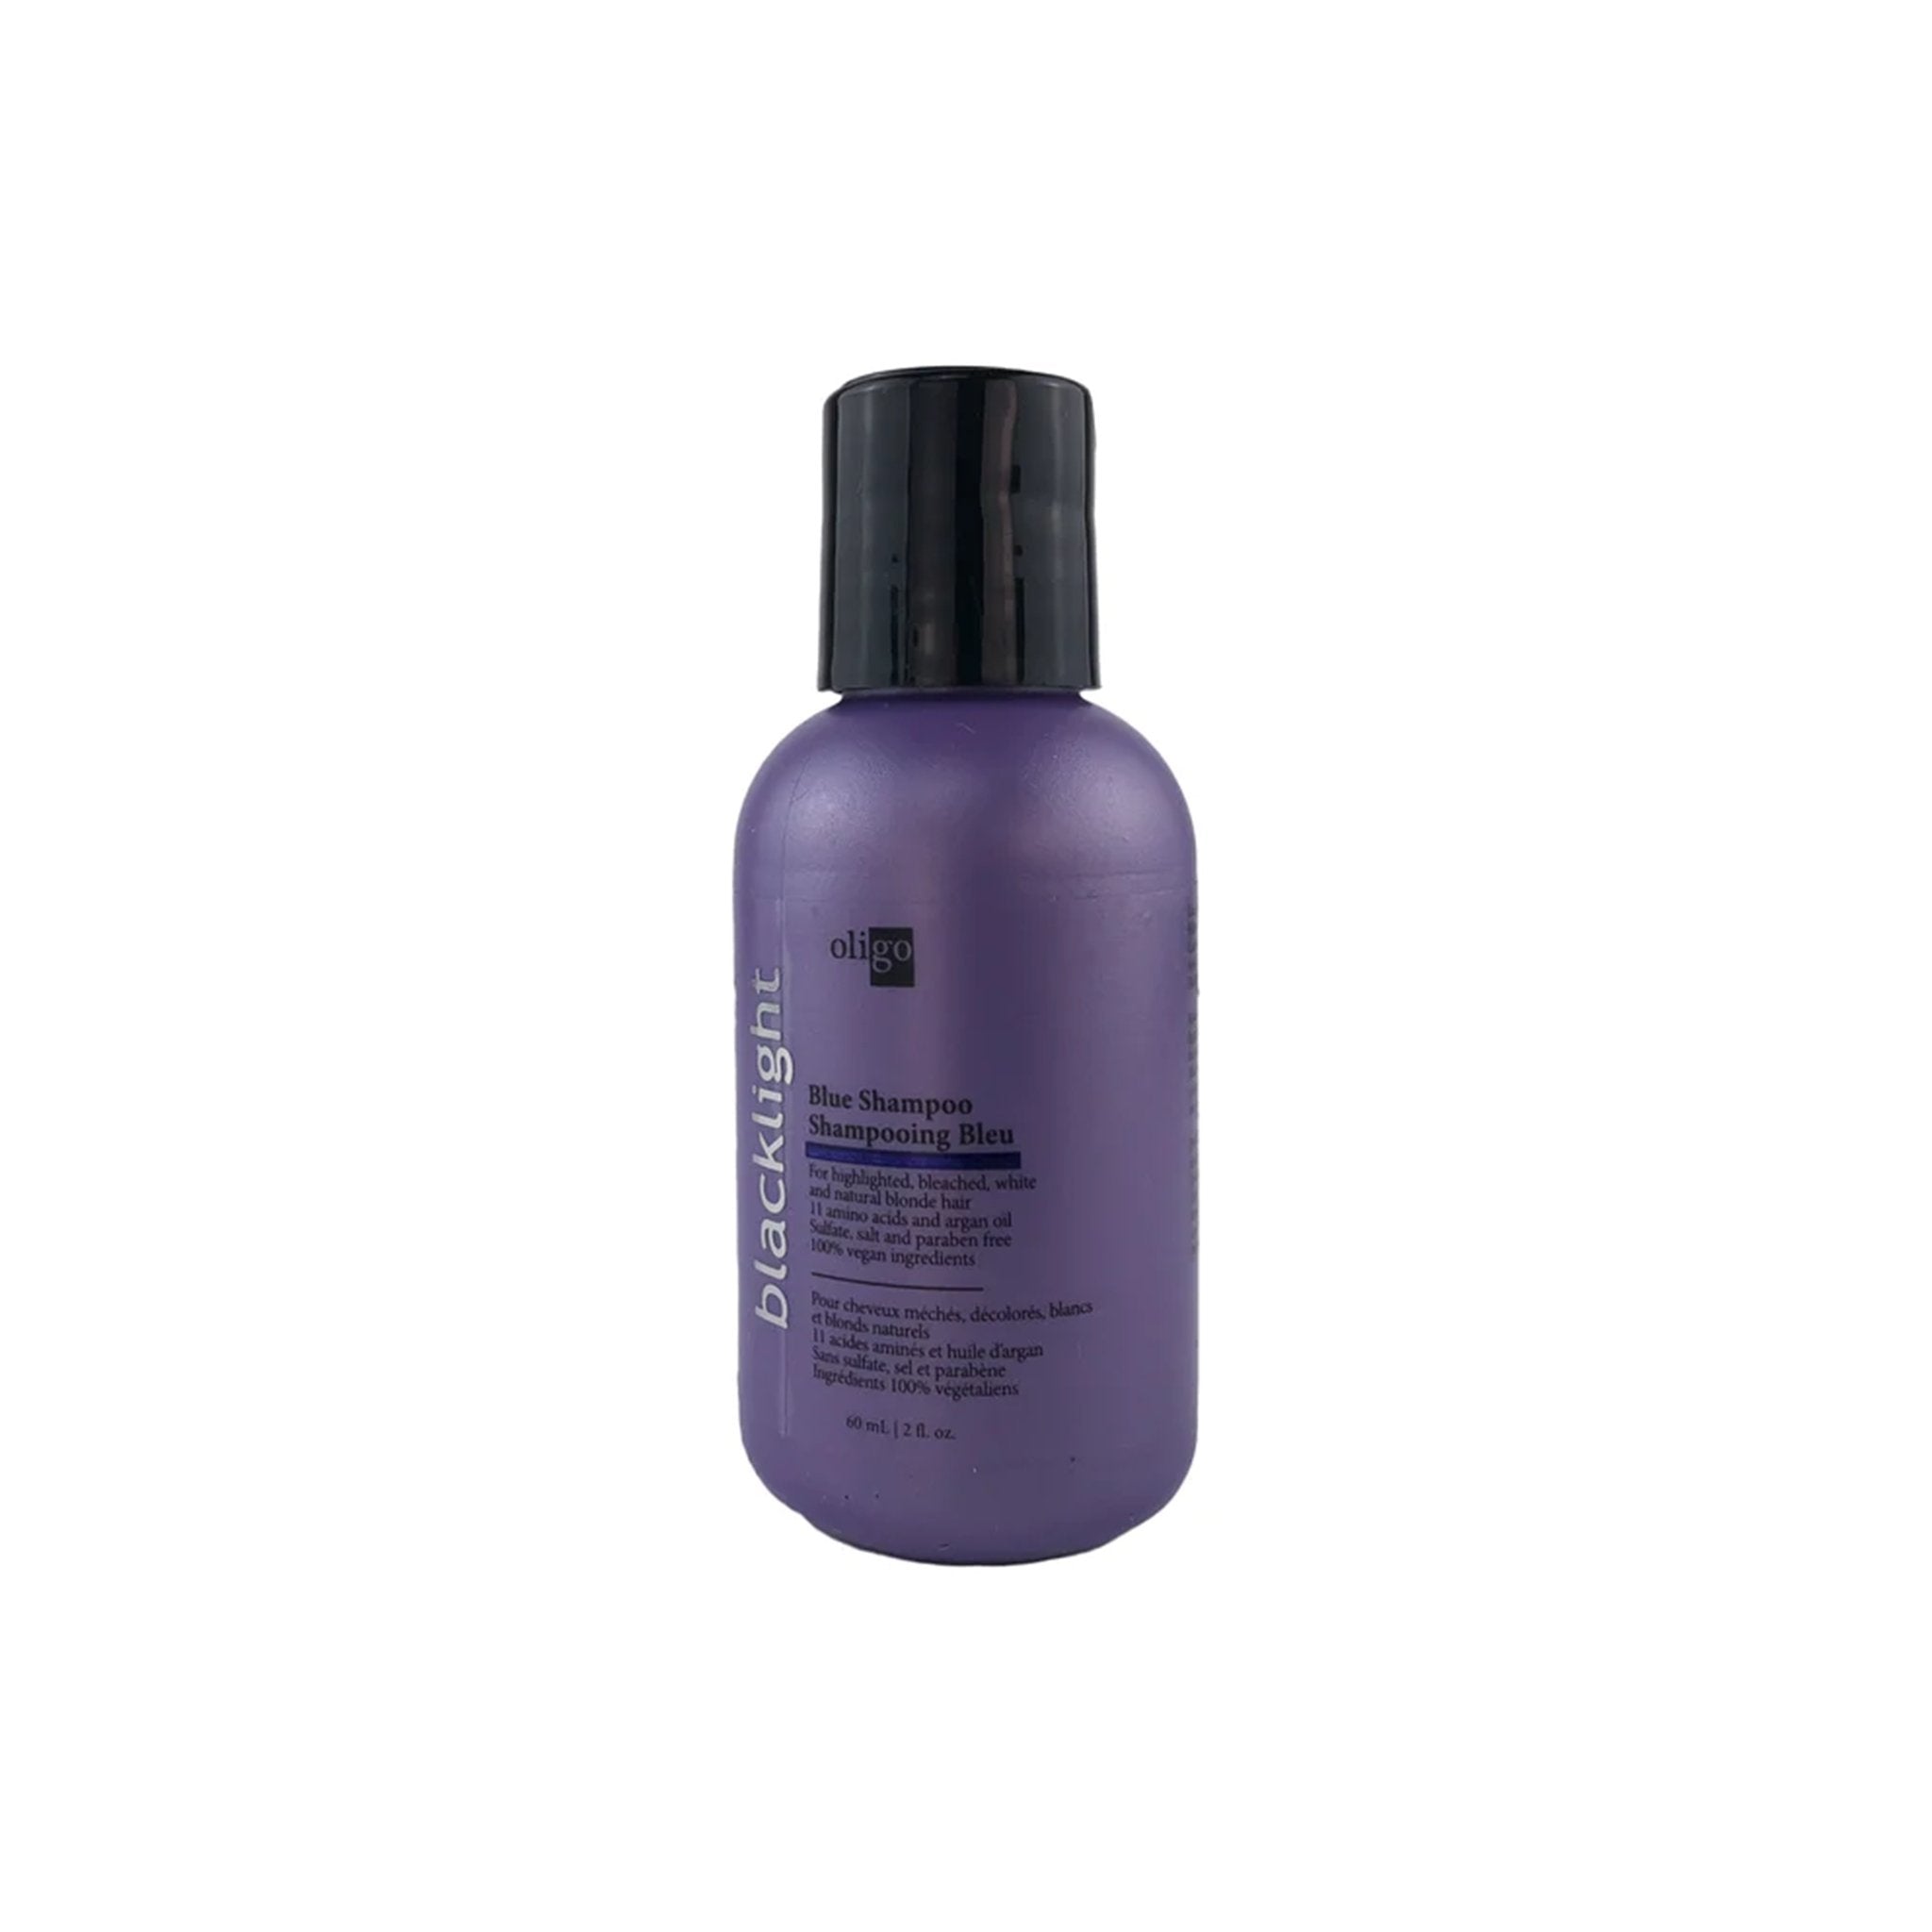 Oligo. Shampoing Bleu Blacklight - 60 ml - Concept C. Shop